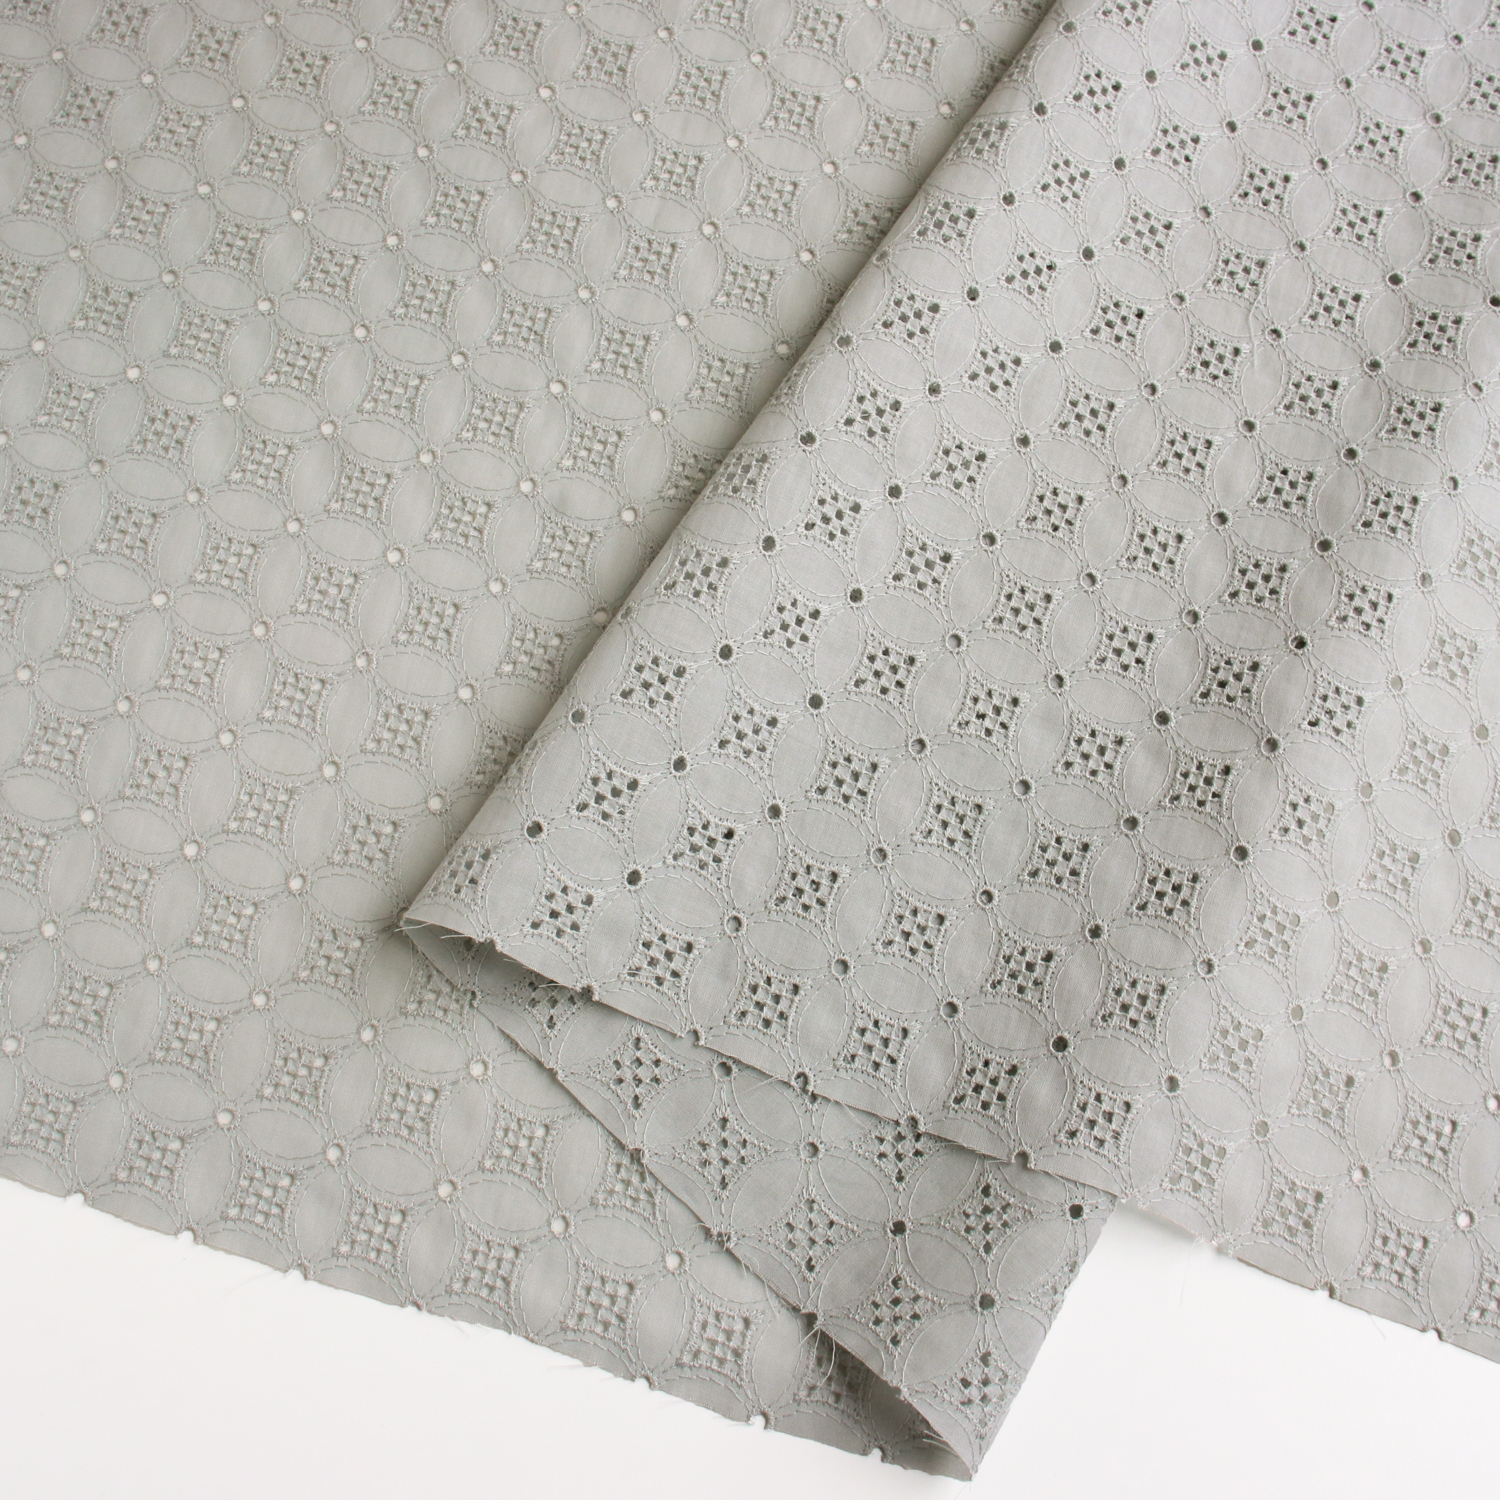 AL692-31 cotton lace fabric, Width 100cm, 1m/unit (m)